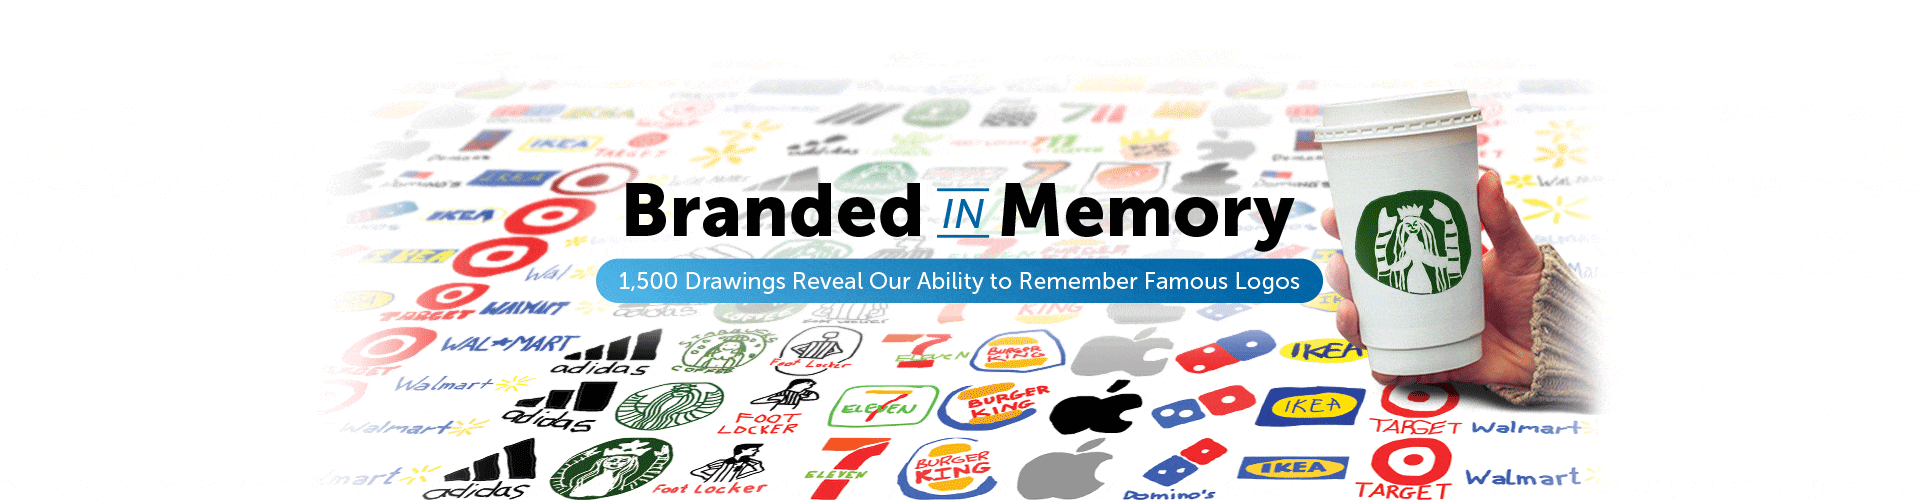 ¿Serías capaz de dibujar algunos de los logos más famosos de la historia de memoria?